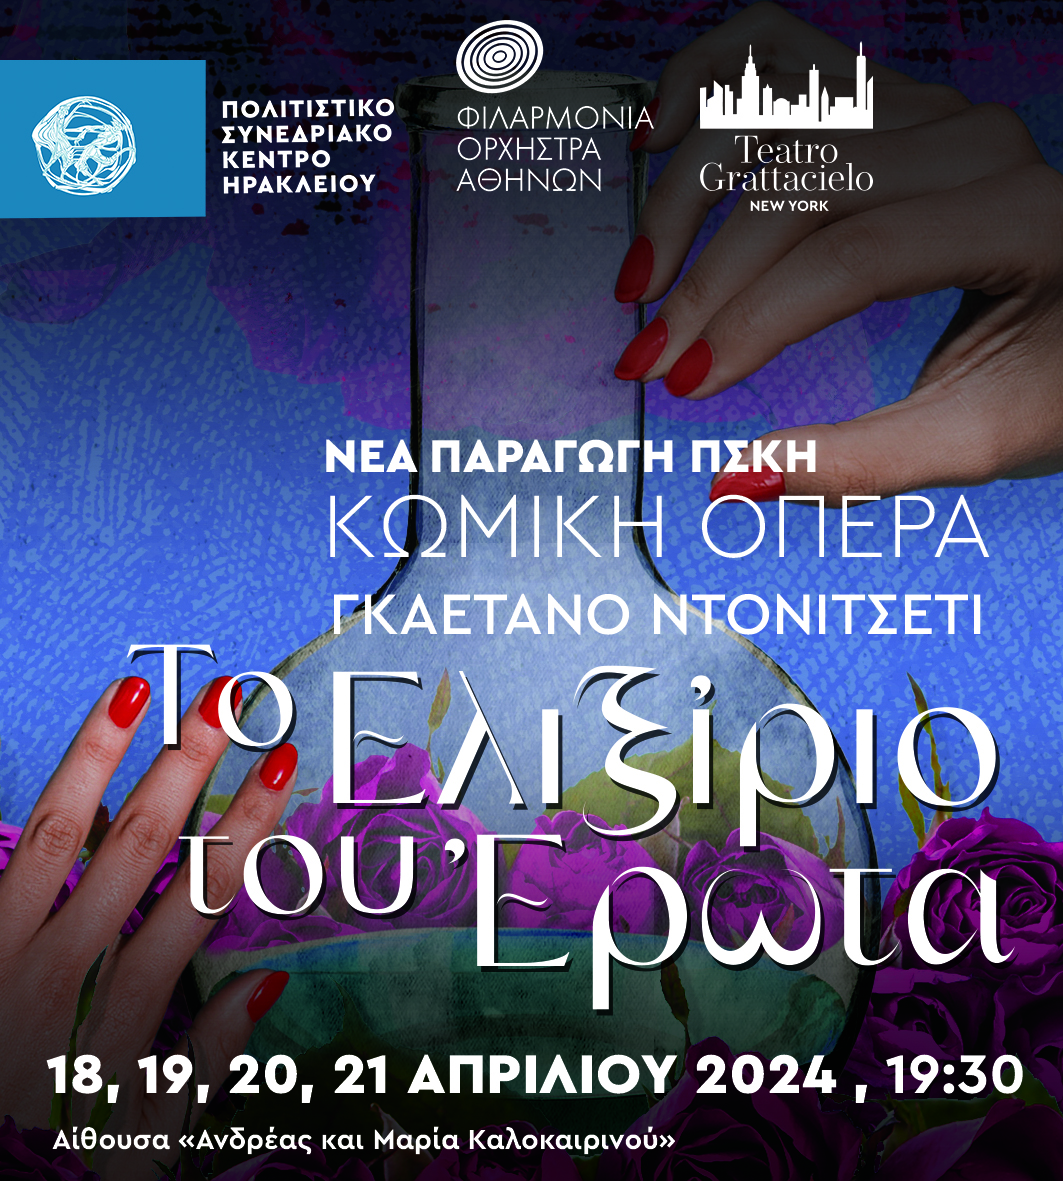 Κωμική Όπερα: Γκαετάνο Ντονιτσέτι- Ελιξίριο του Έρωτα στο ΠΣΚΗ